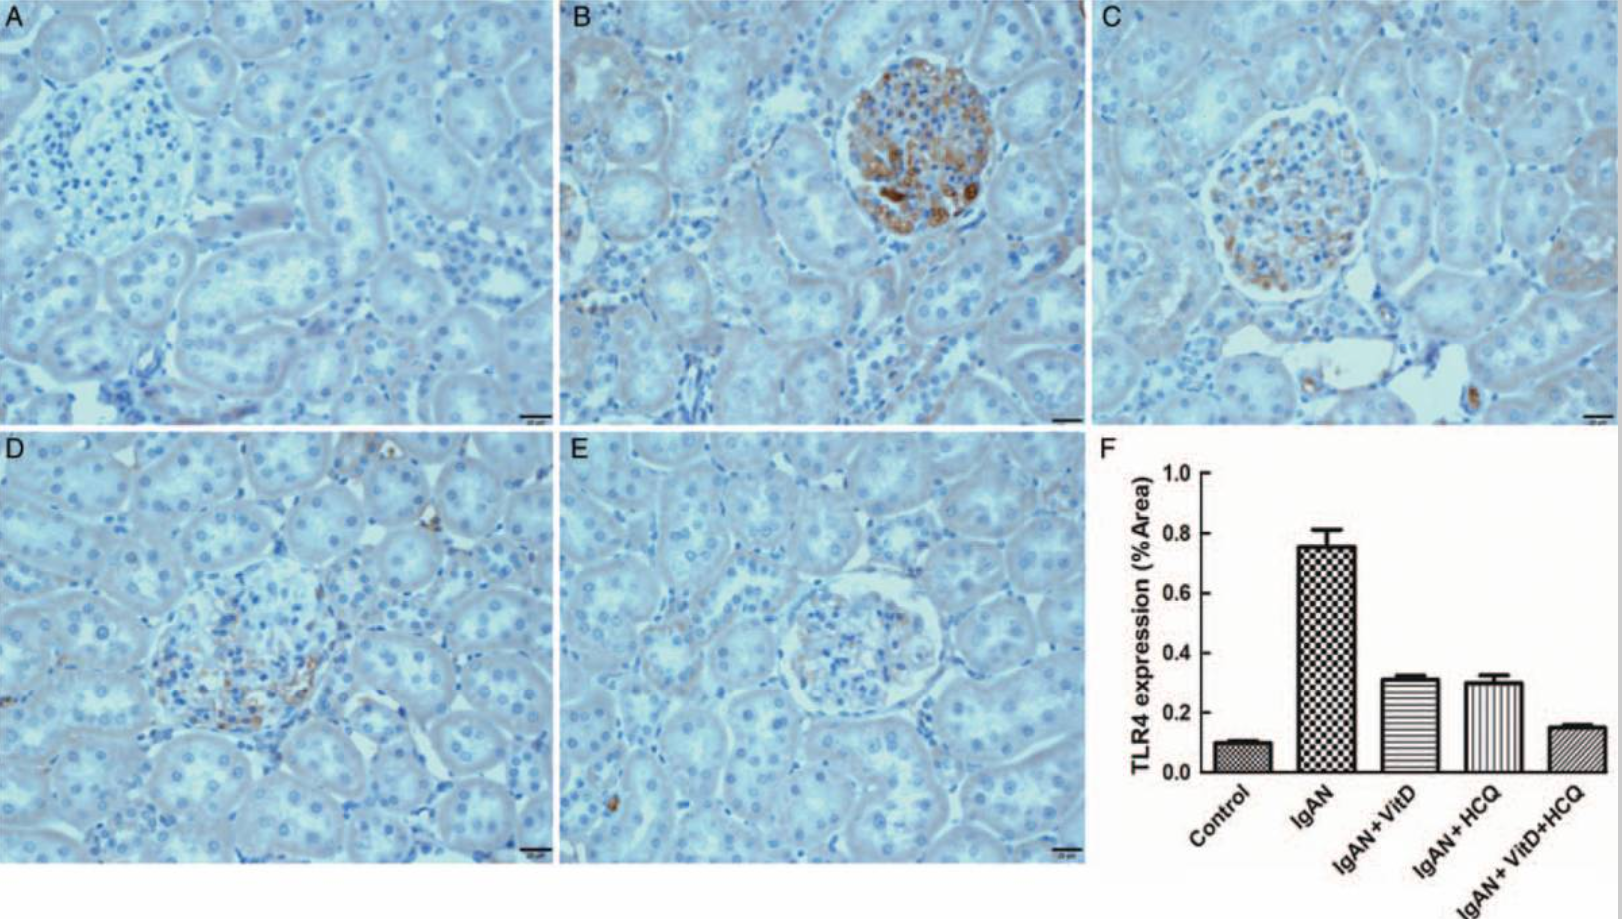 维生素D和羟氯喹通过TLR4减少IgA肾病大鼠模型中的肾损伤和<font color="red">Ki67</font>表达